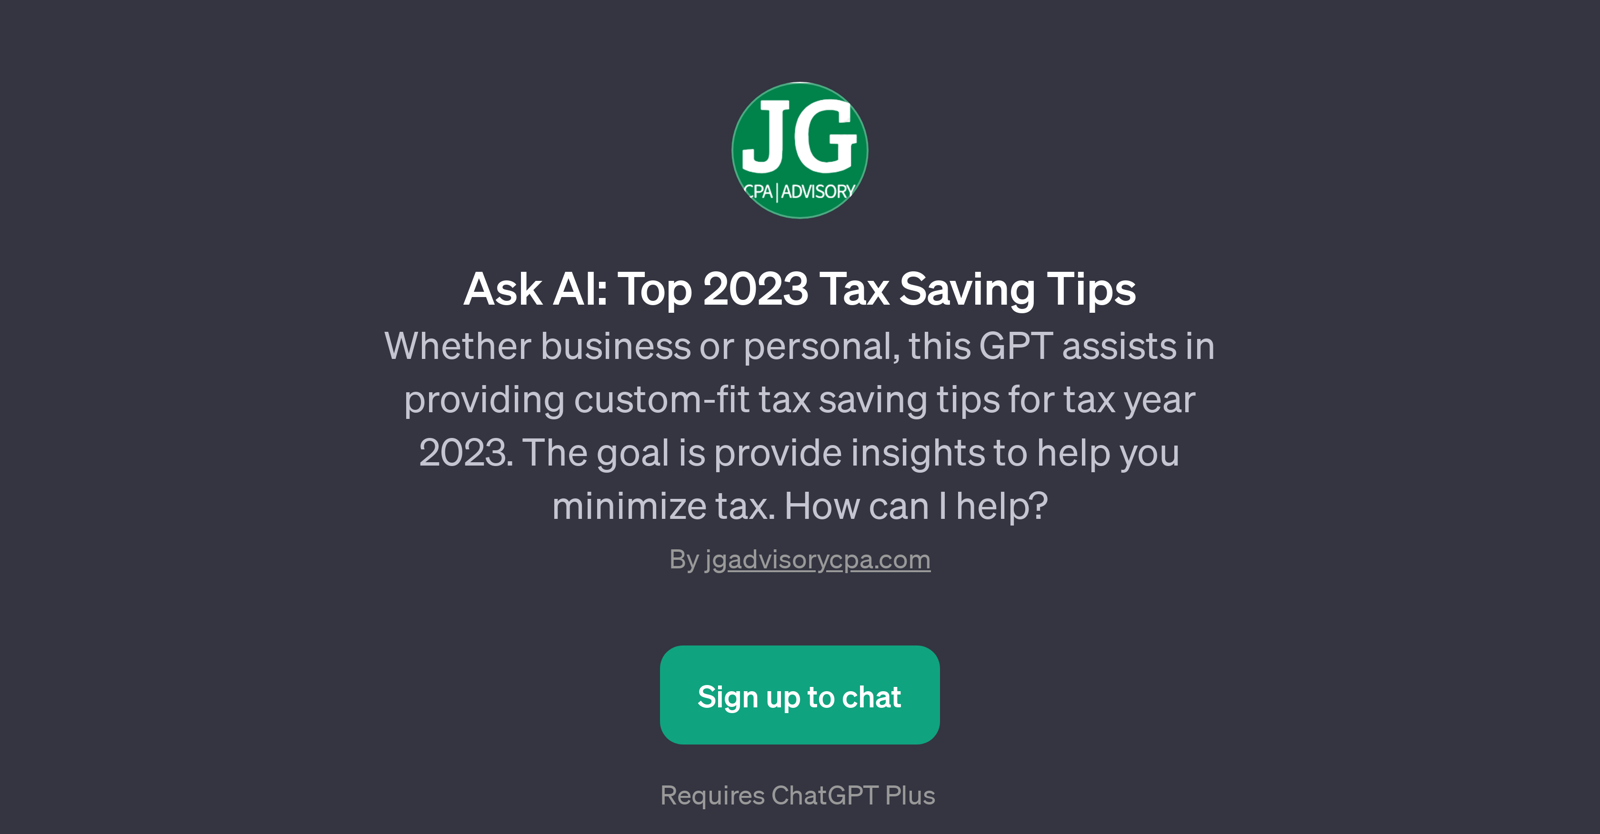 Ask AI: Top 2023 Tax Saving Tips website